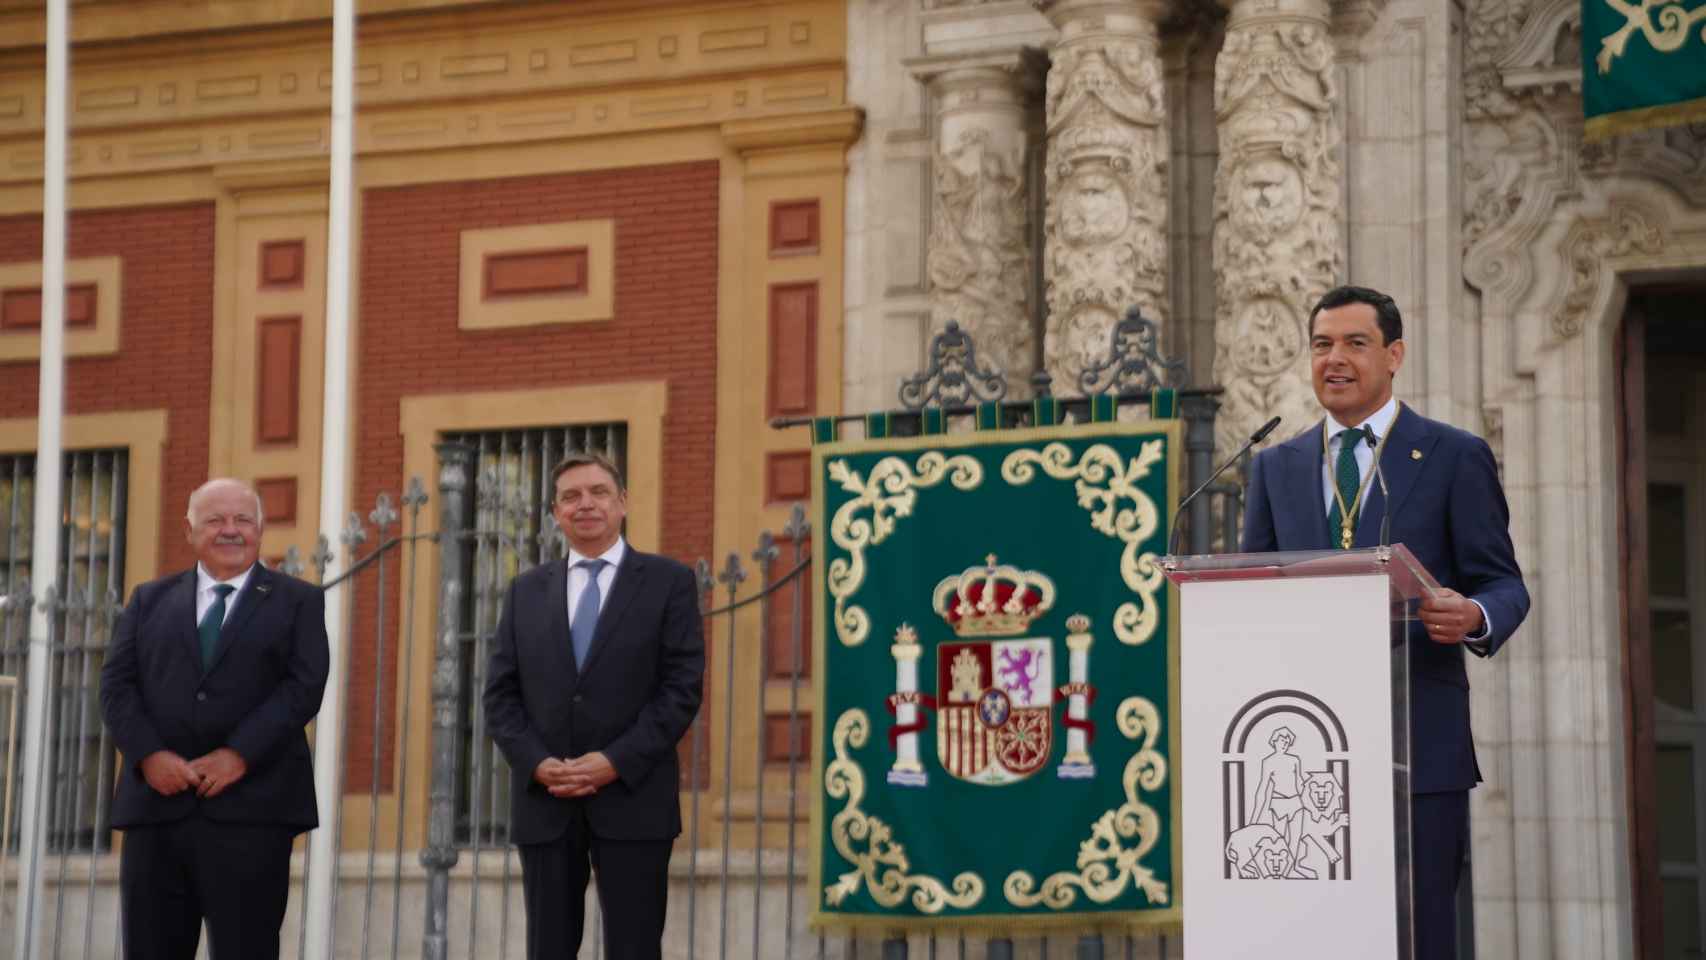 Imagen de Juanma Moreno durante su discurso.